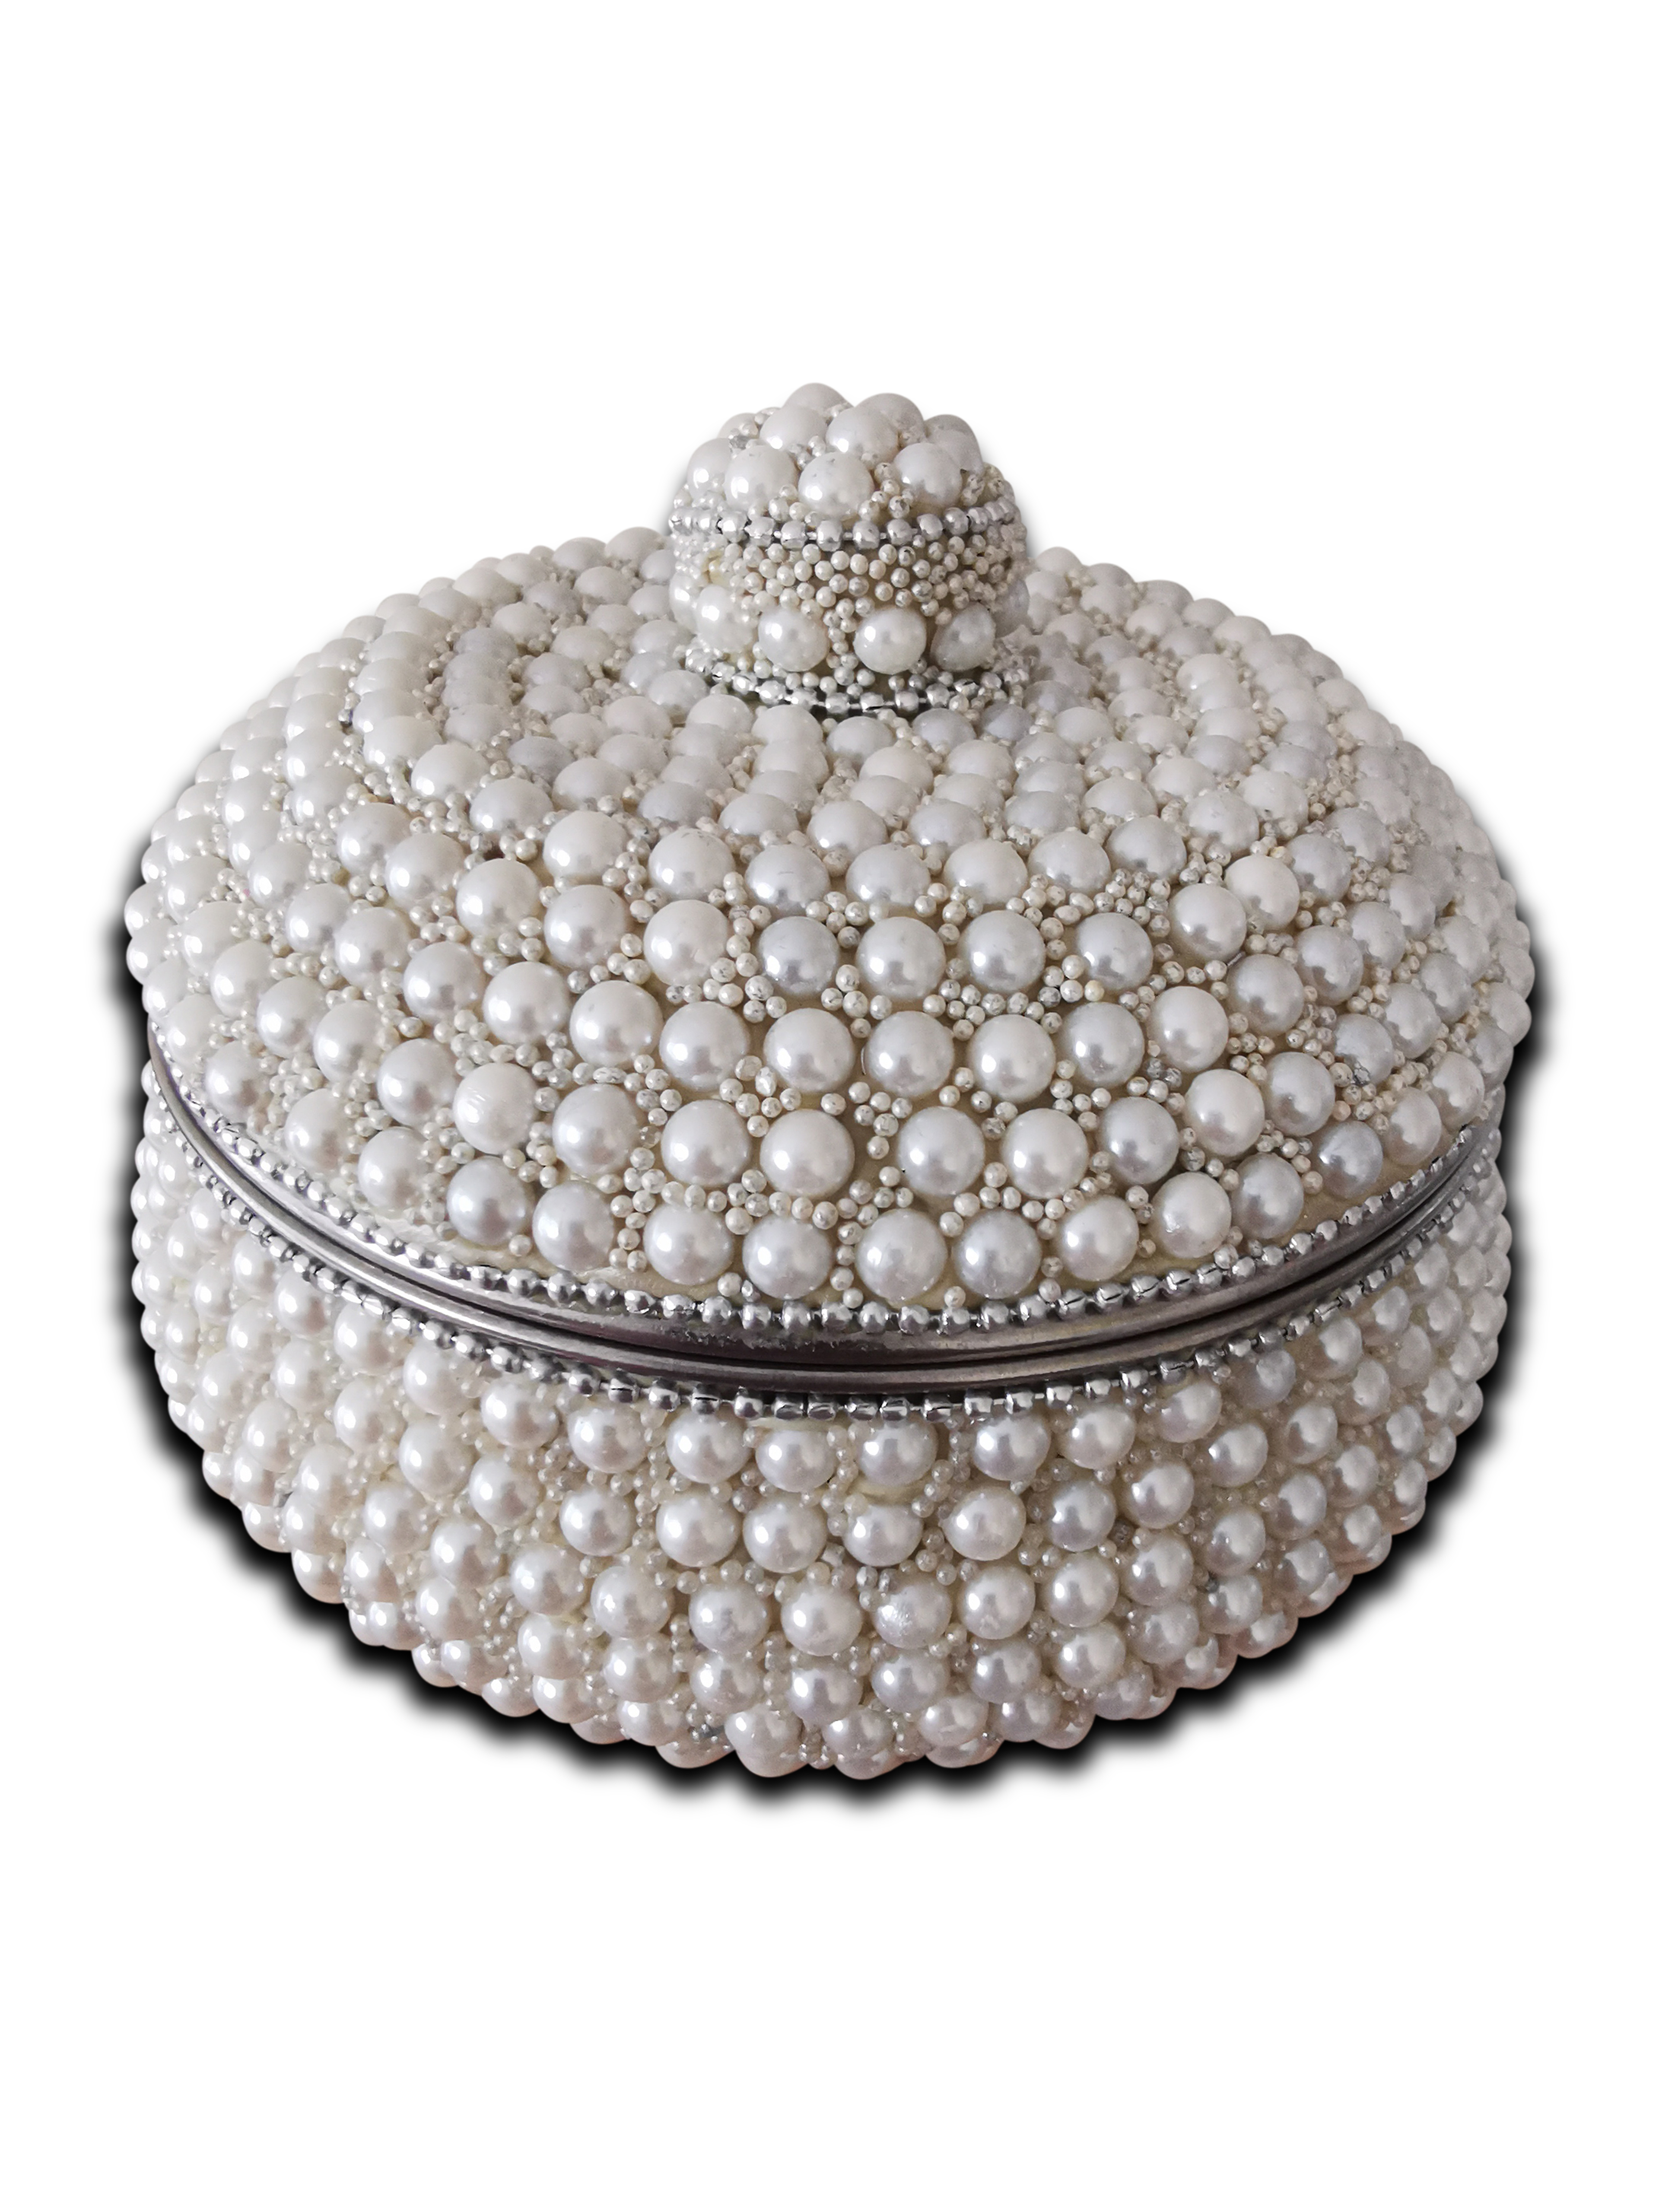 Handmade Beautiful Pearl Beaded Jewellery Ring Box Organizer